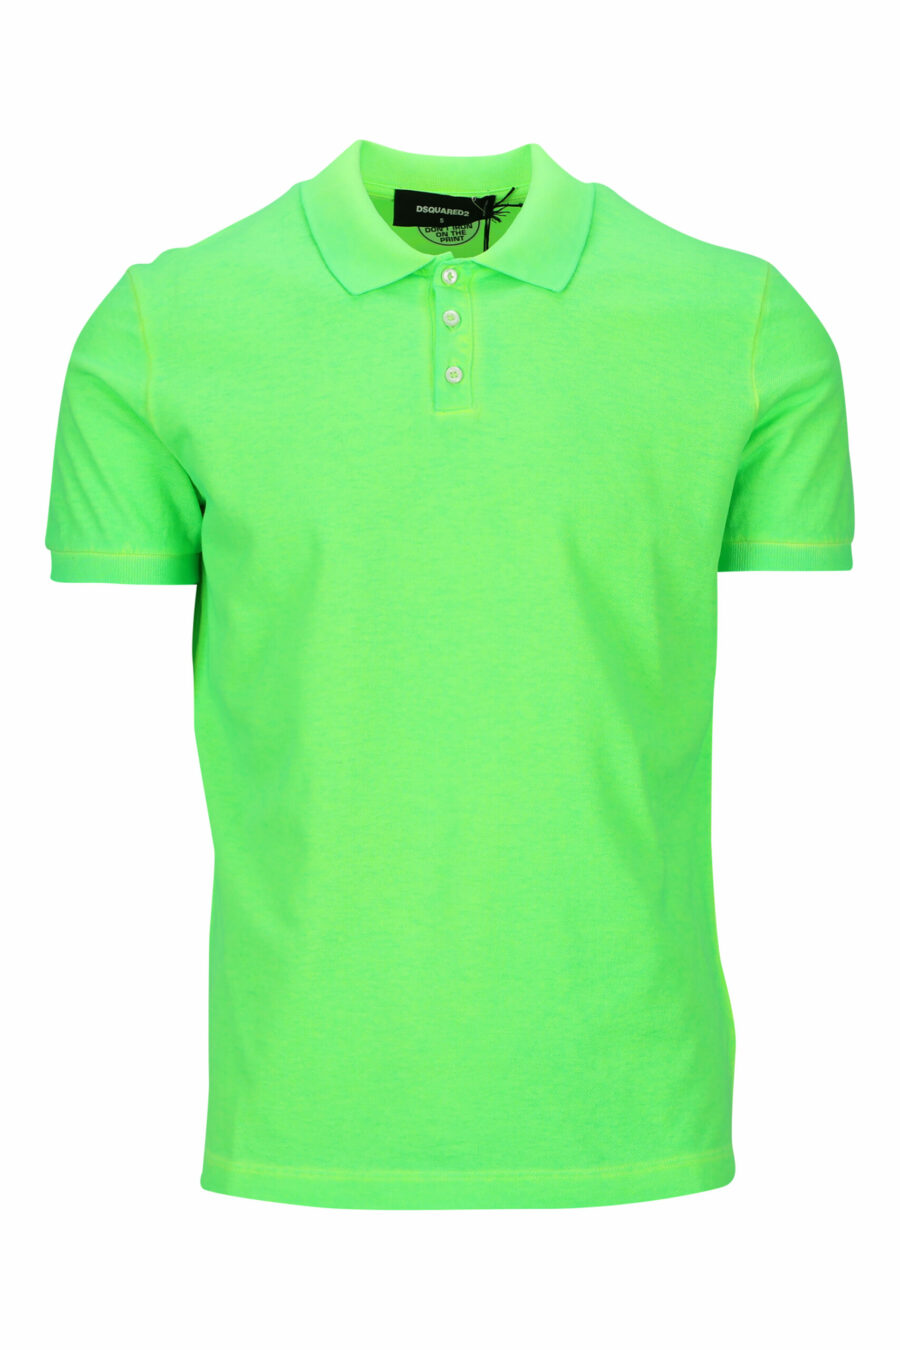 Neongrünes "Tennis Fit" Poloshirt mit "Icon" Logo auf dem Rücken - 8054148400781 skaliert